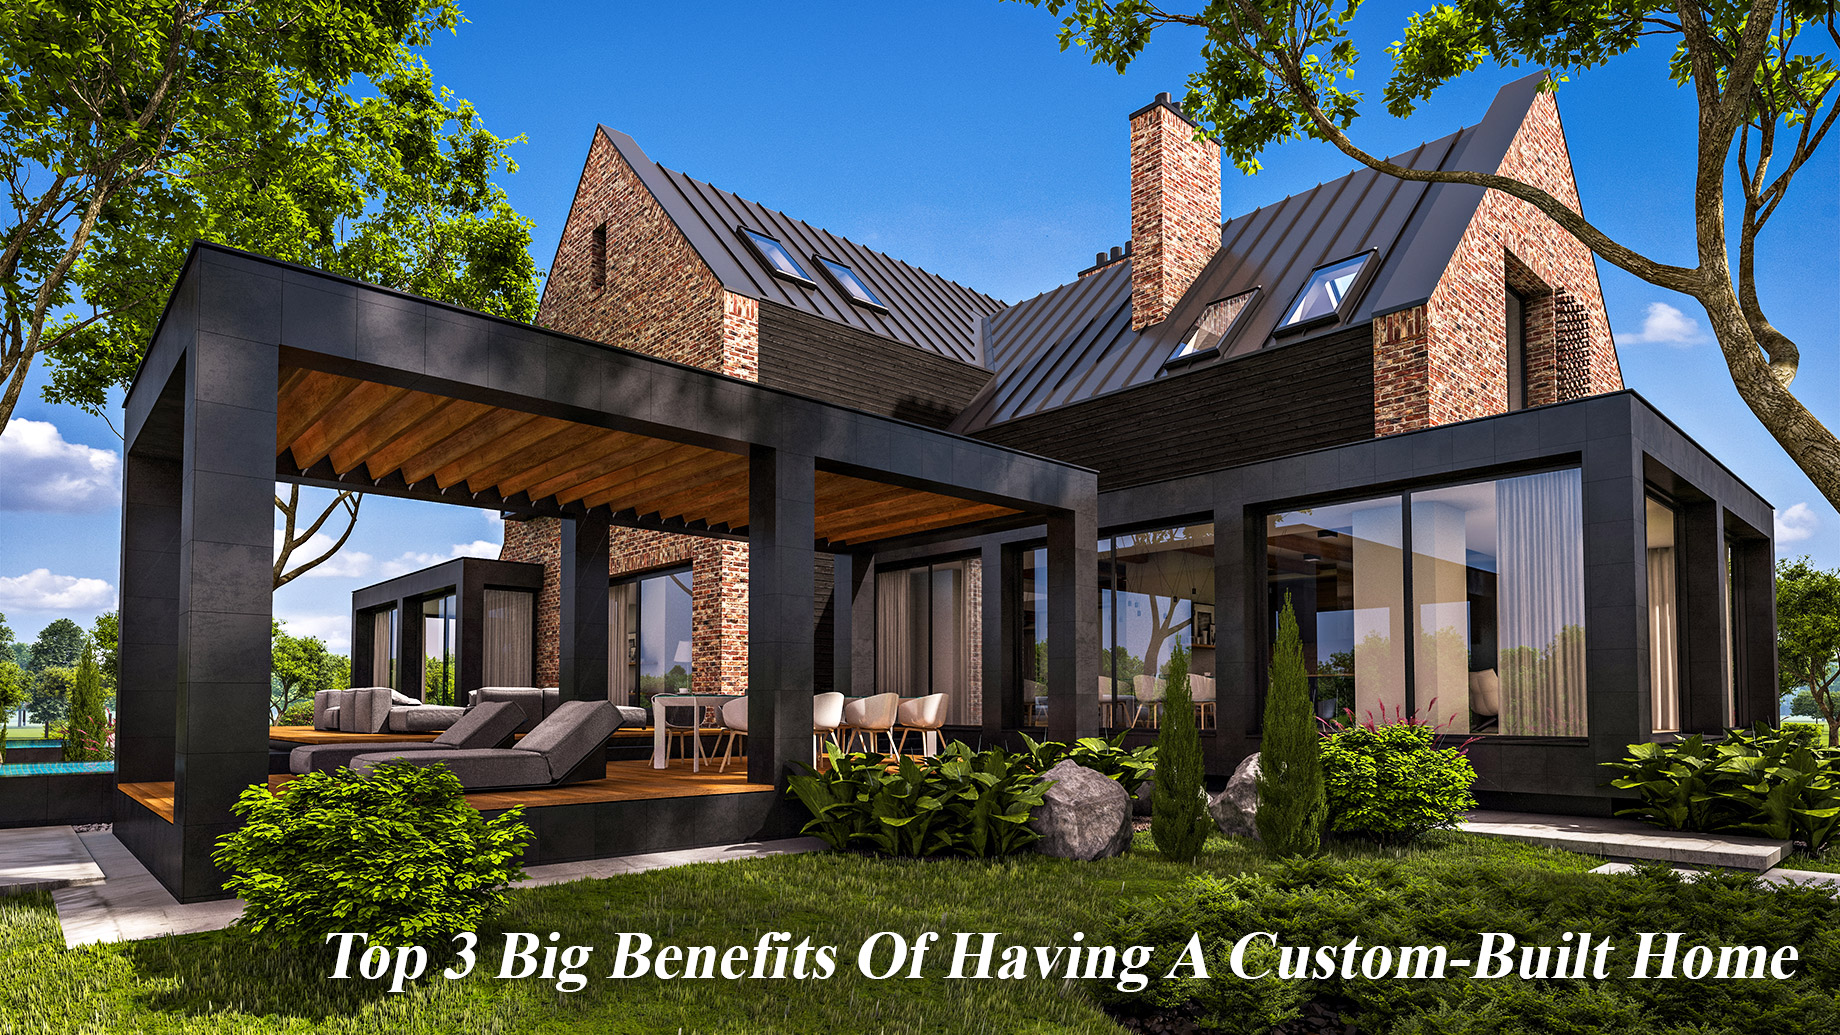 Top 3 Big Benefits Of Having A Custom-Built Home